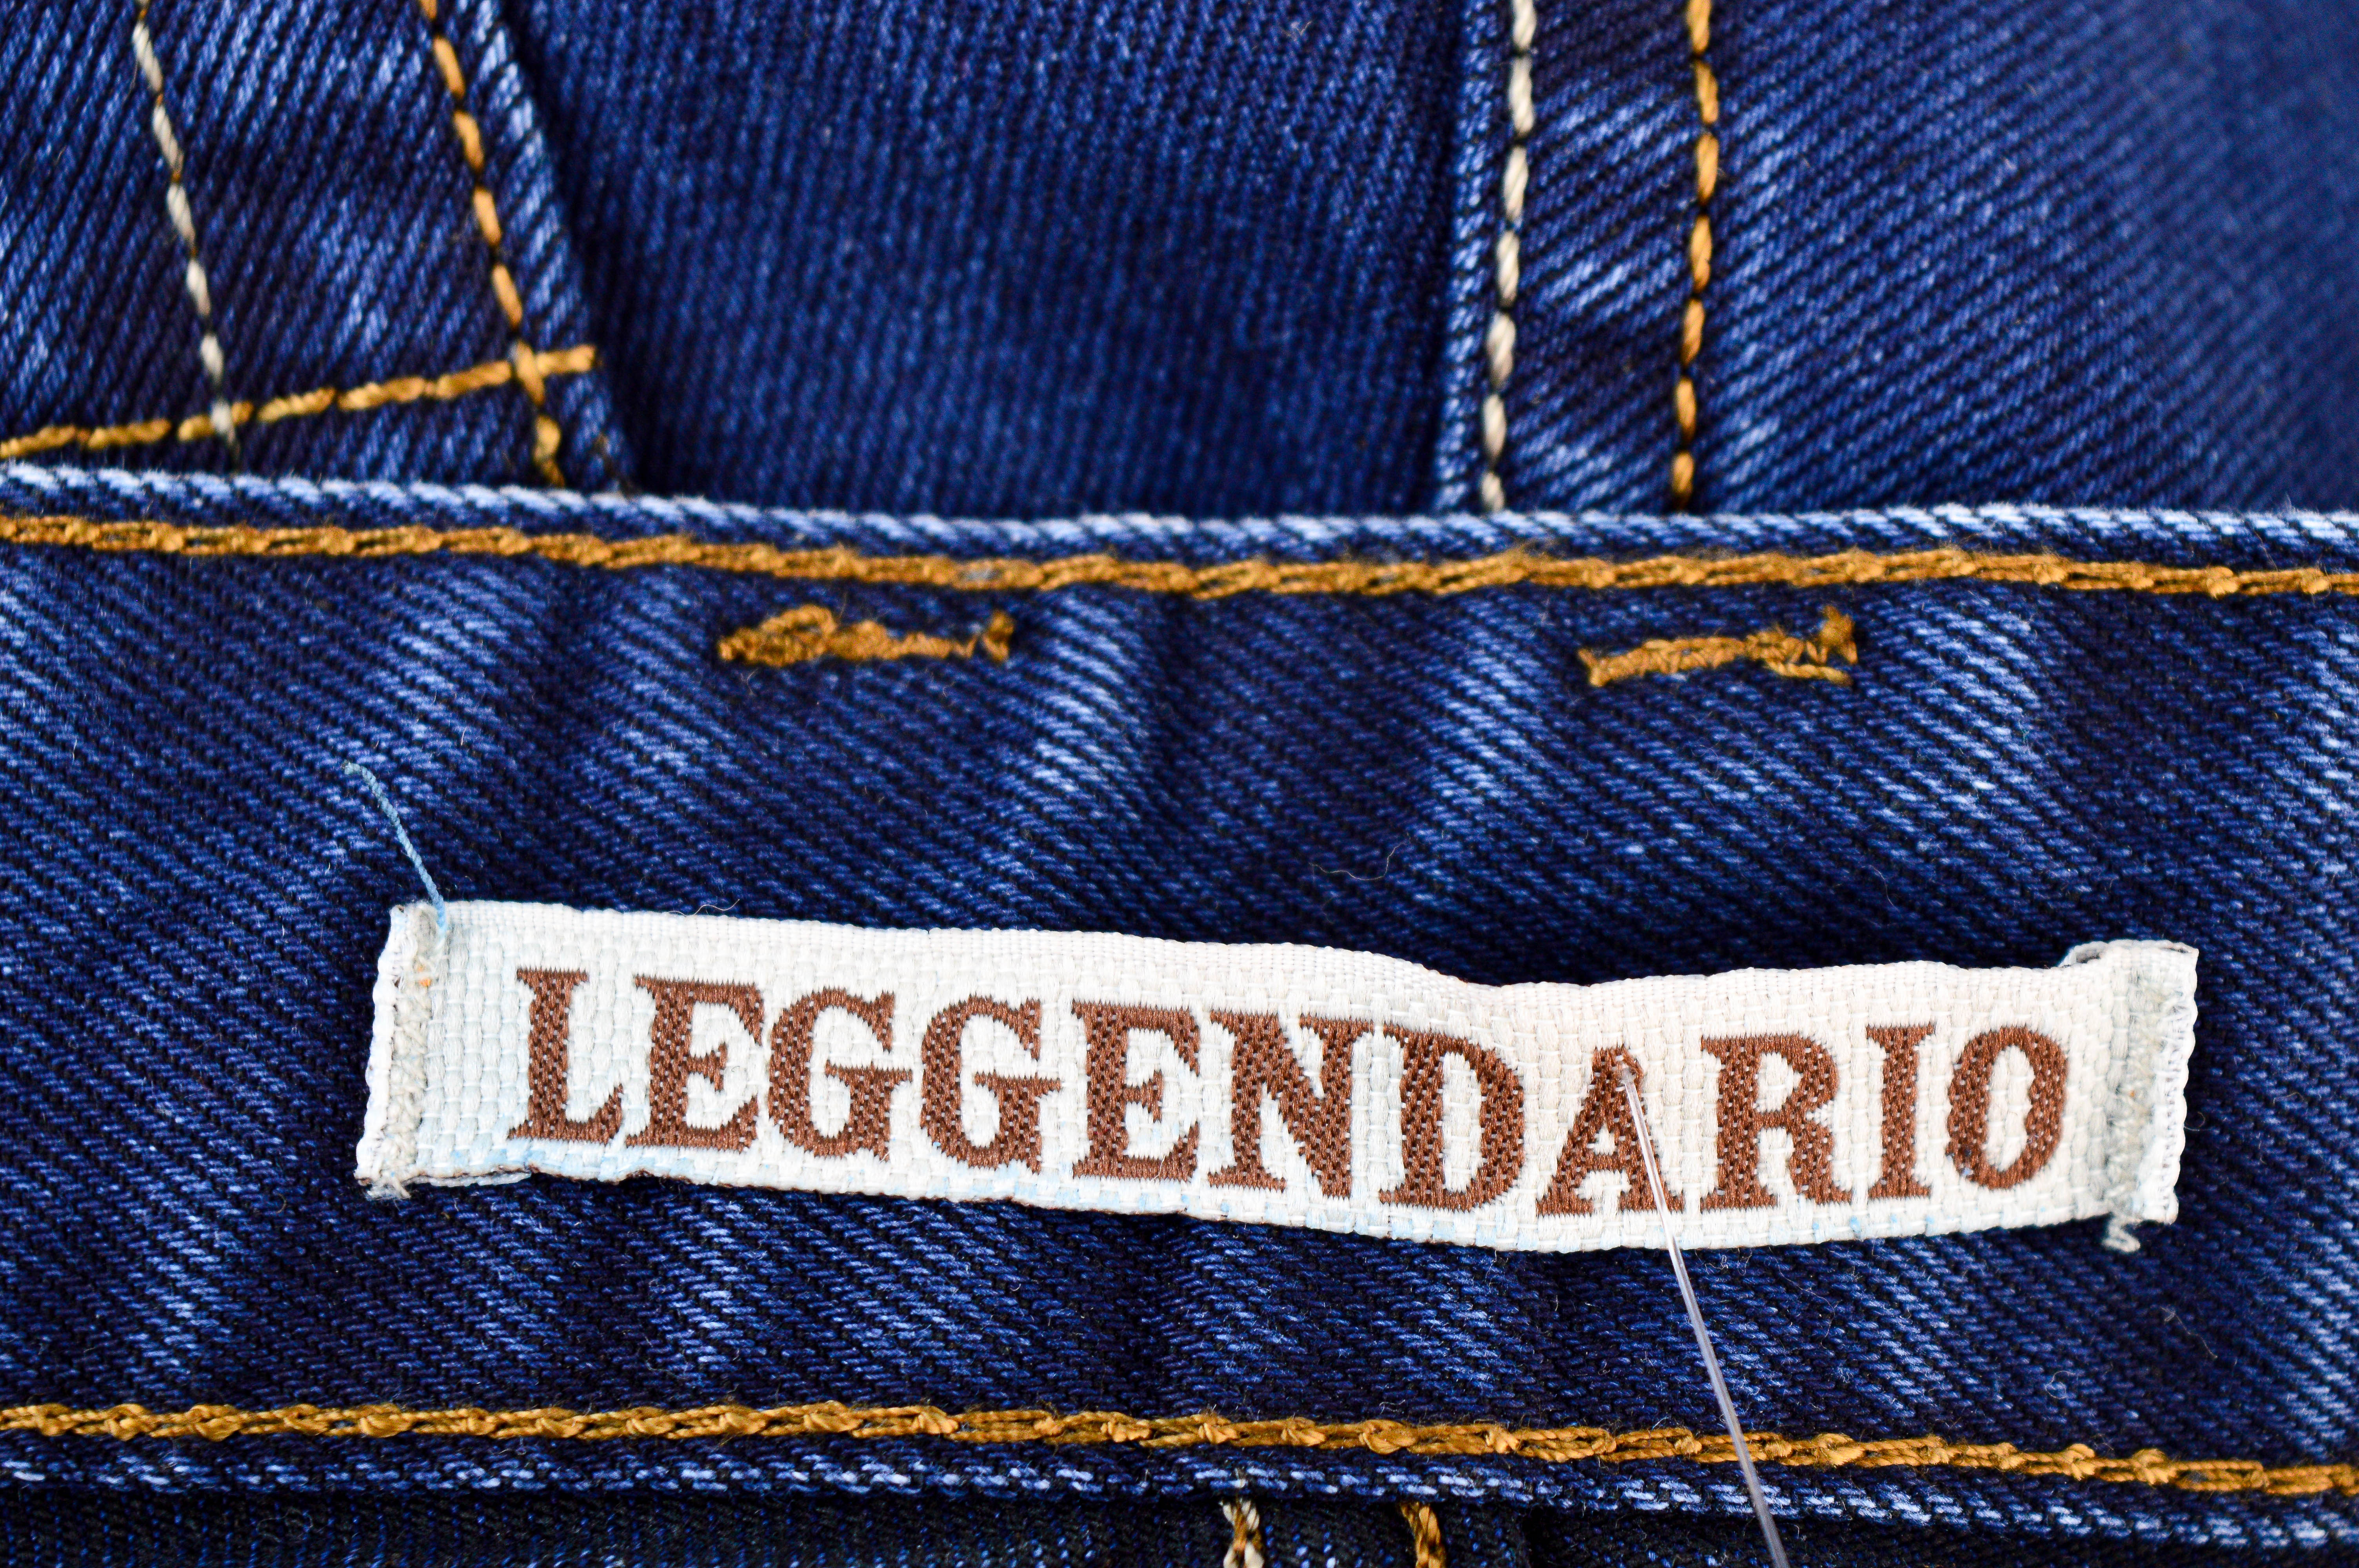 Men's jeans - Leggendario - 2